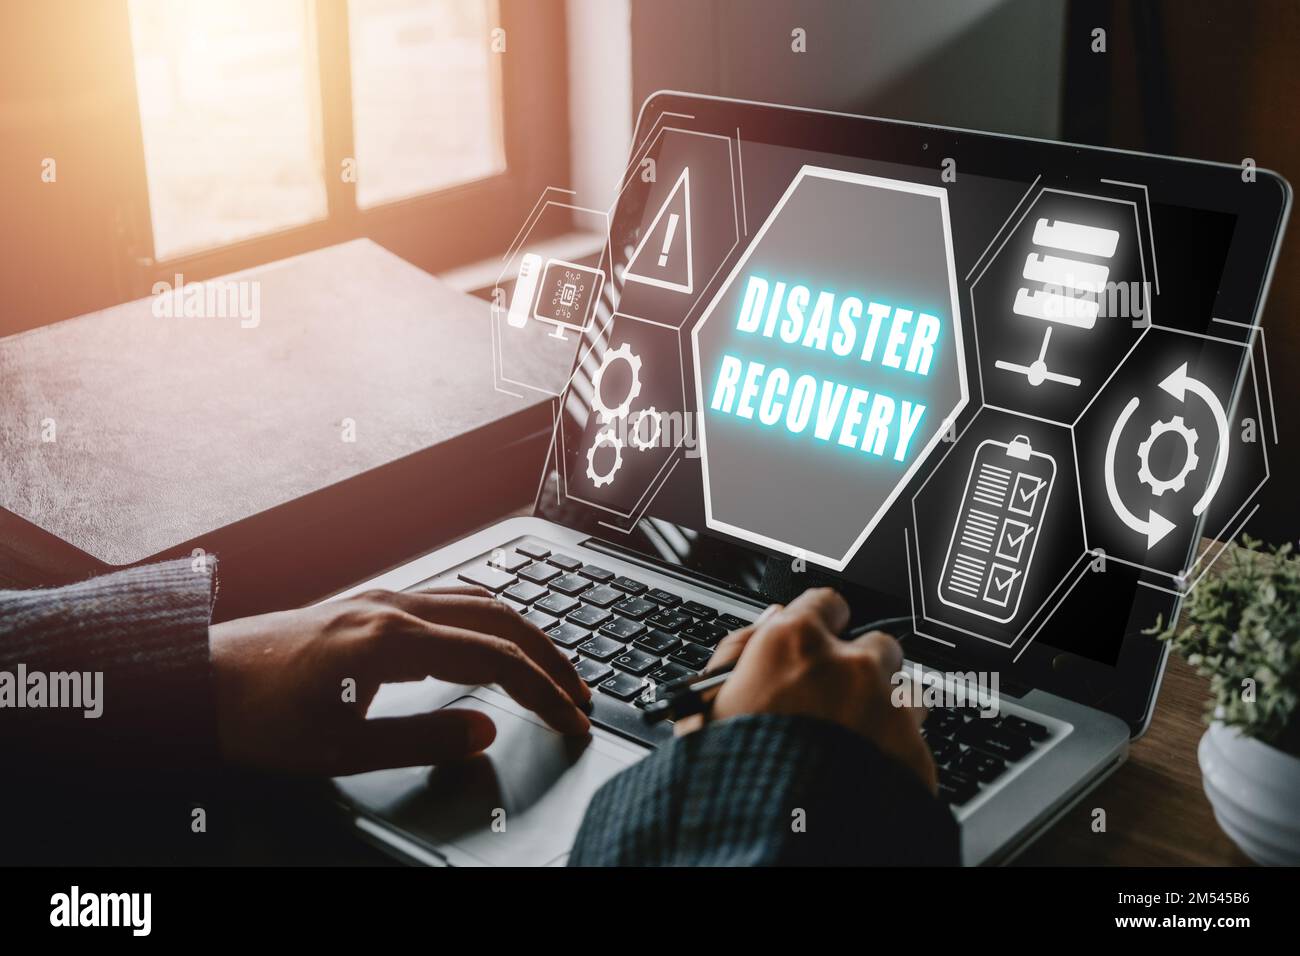 Disaster Recovery-Konzept, Person, die einen Laptop mit dem Disaster Recovery-Symbol auf dem virtuellen Bildschirm verwendet. Stockfoto